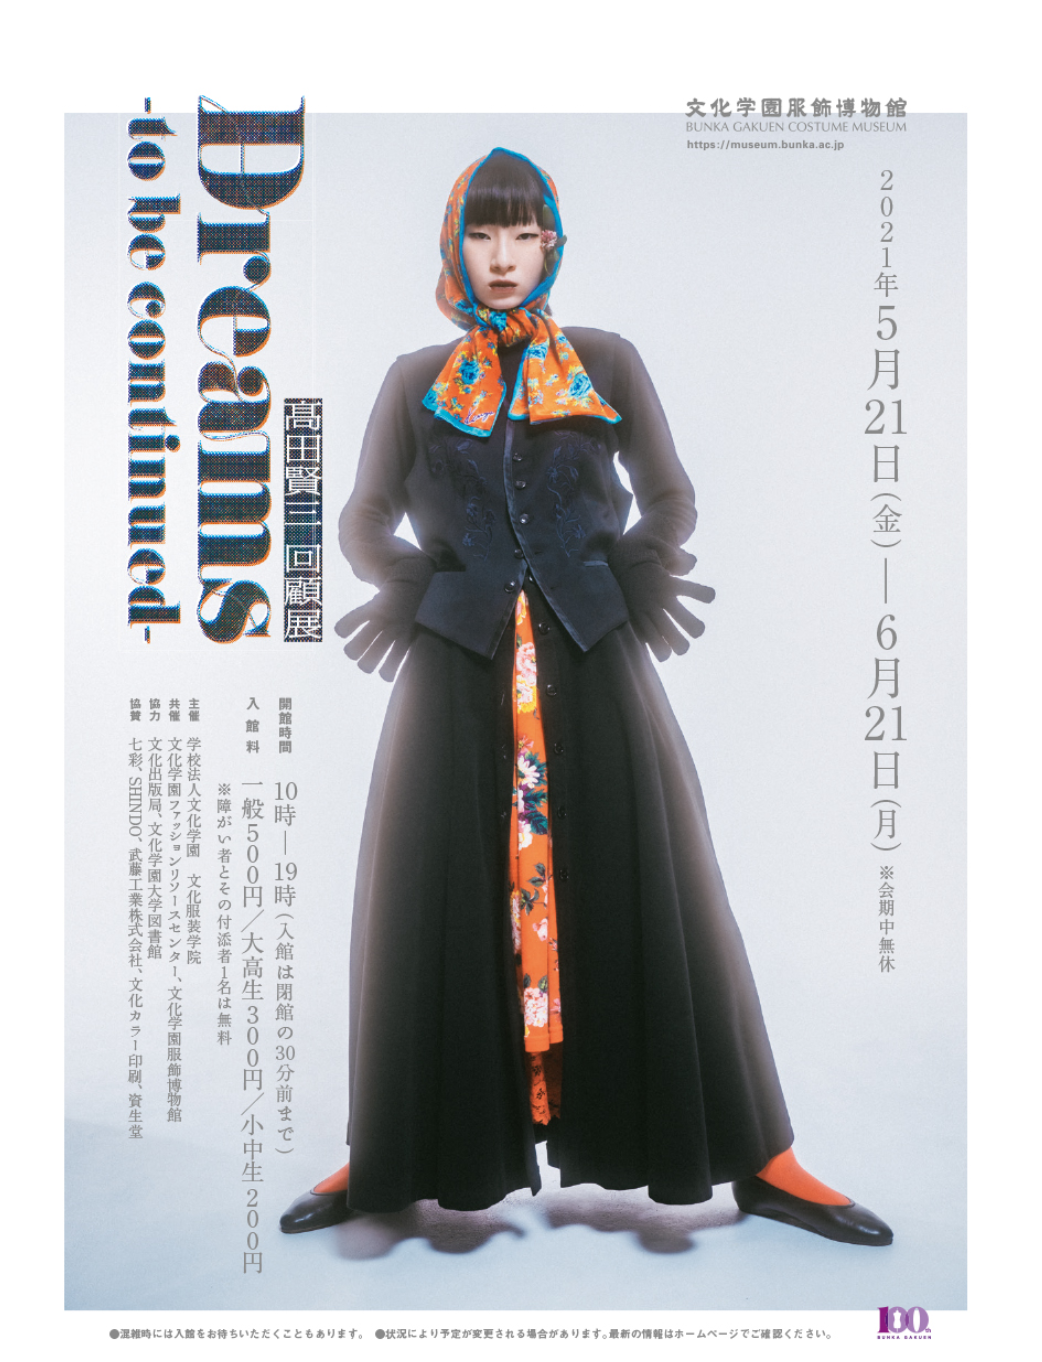 日本文化学园服饰博物举办已故日本时装设计大师高田贤三回顾展设计灵感